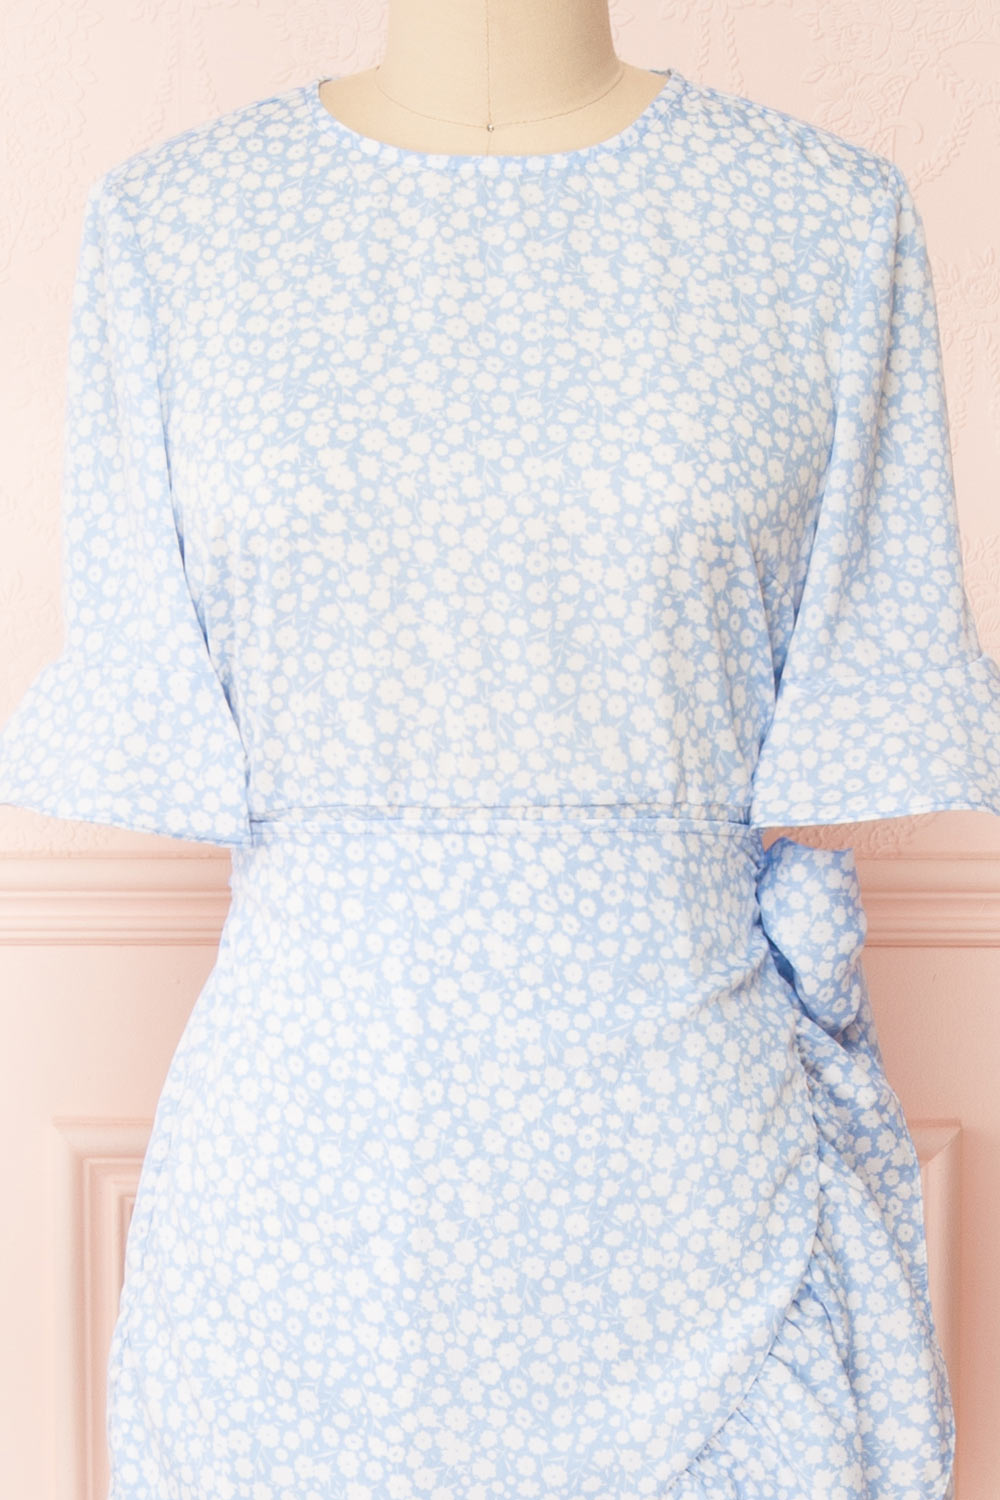 Stevette Blue Short Faux-Wrap Dress w/ Ruffles | Boutique 1861 front close-up